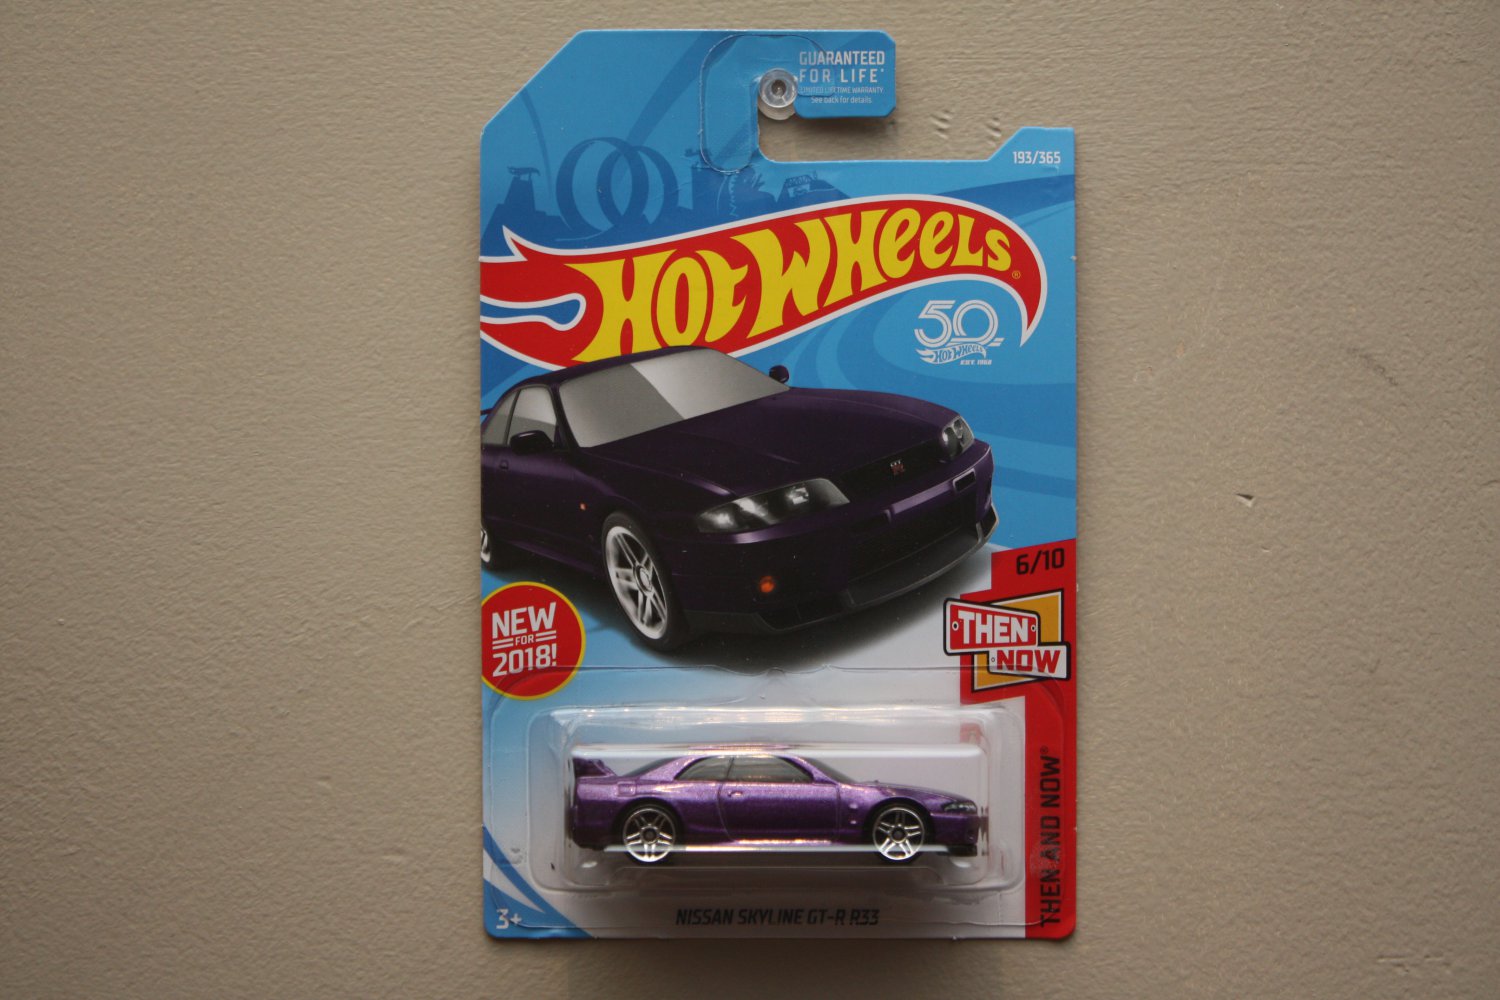 hot wheels r33 purple